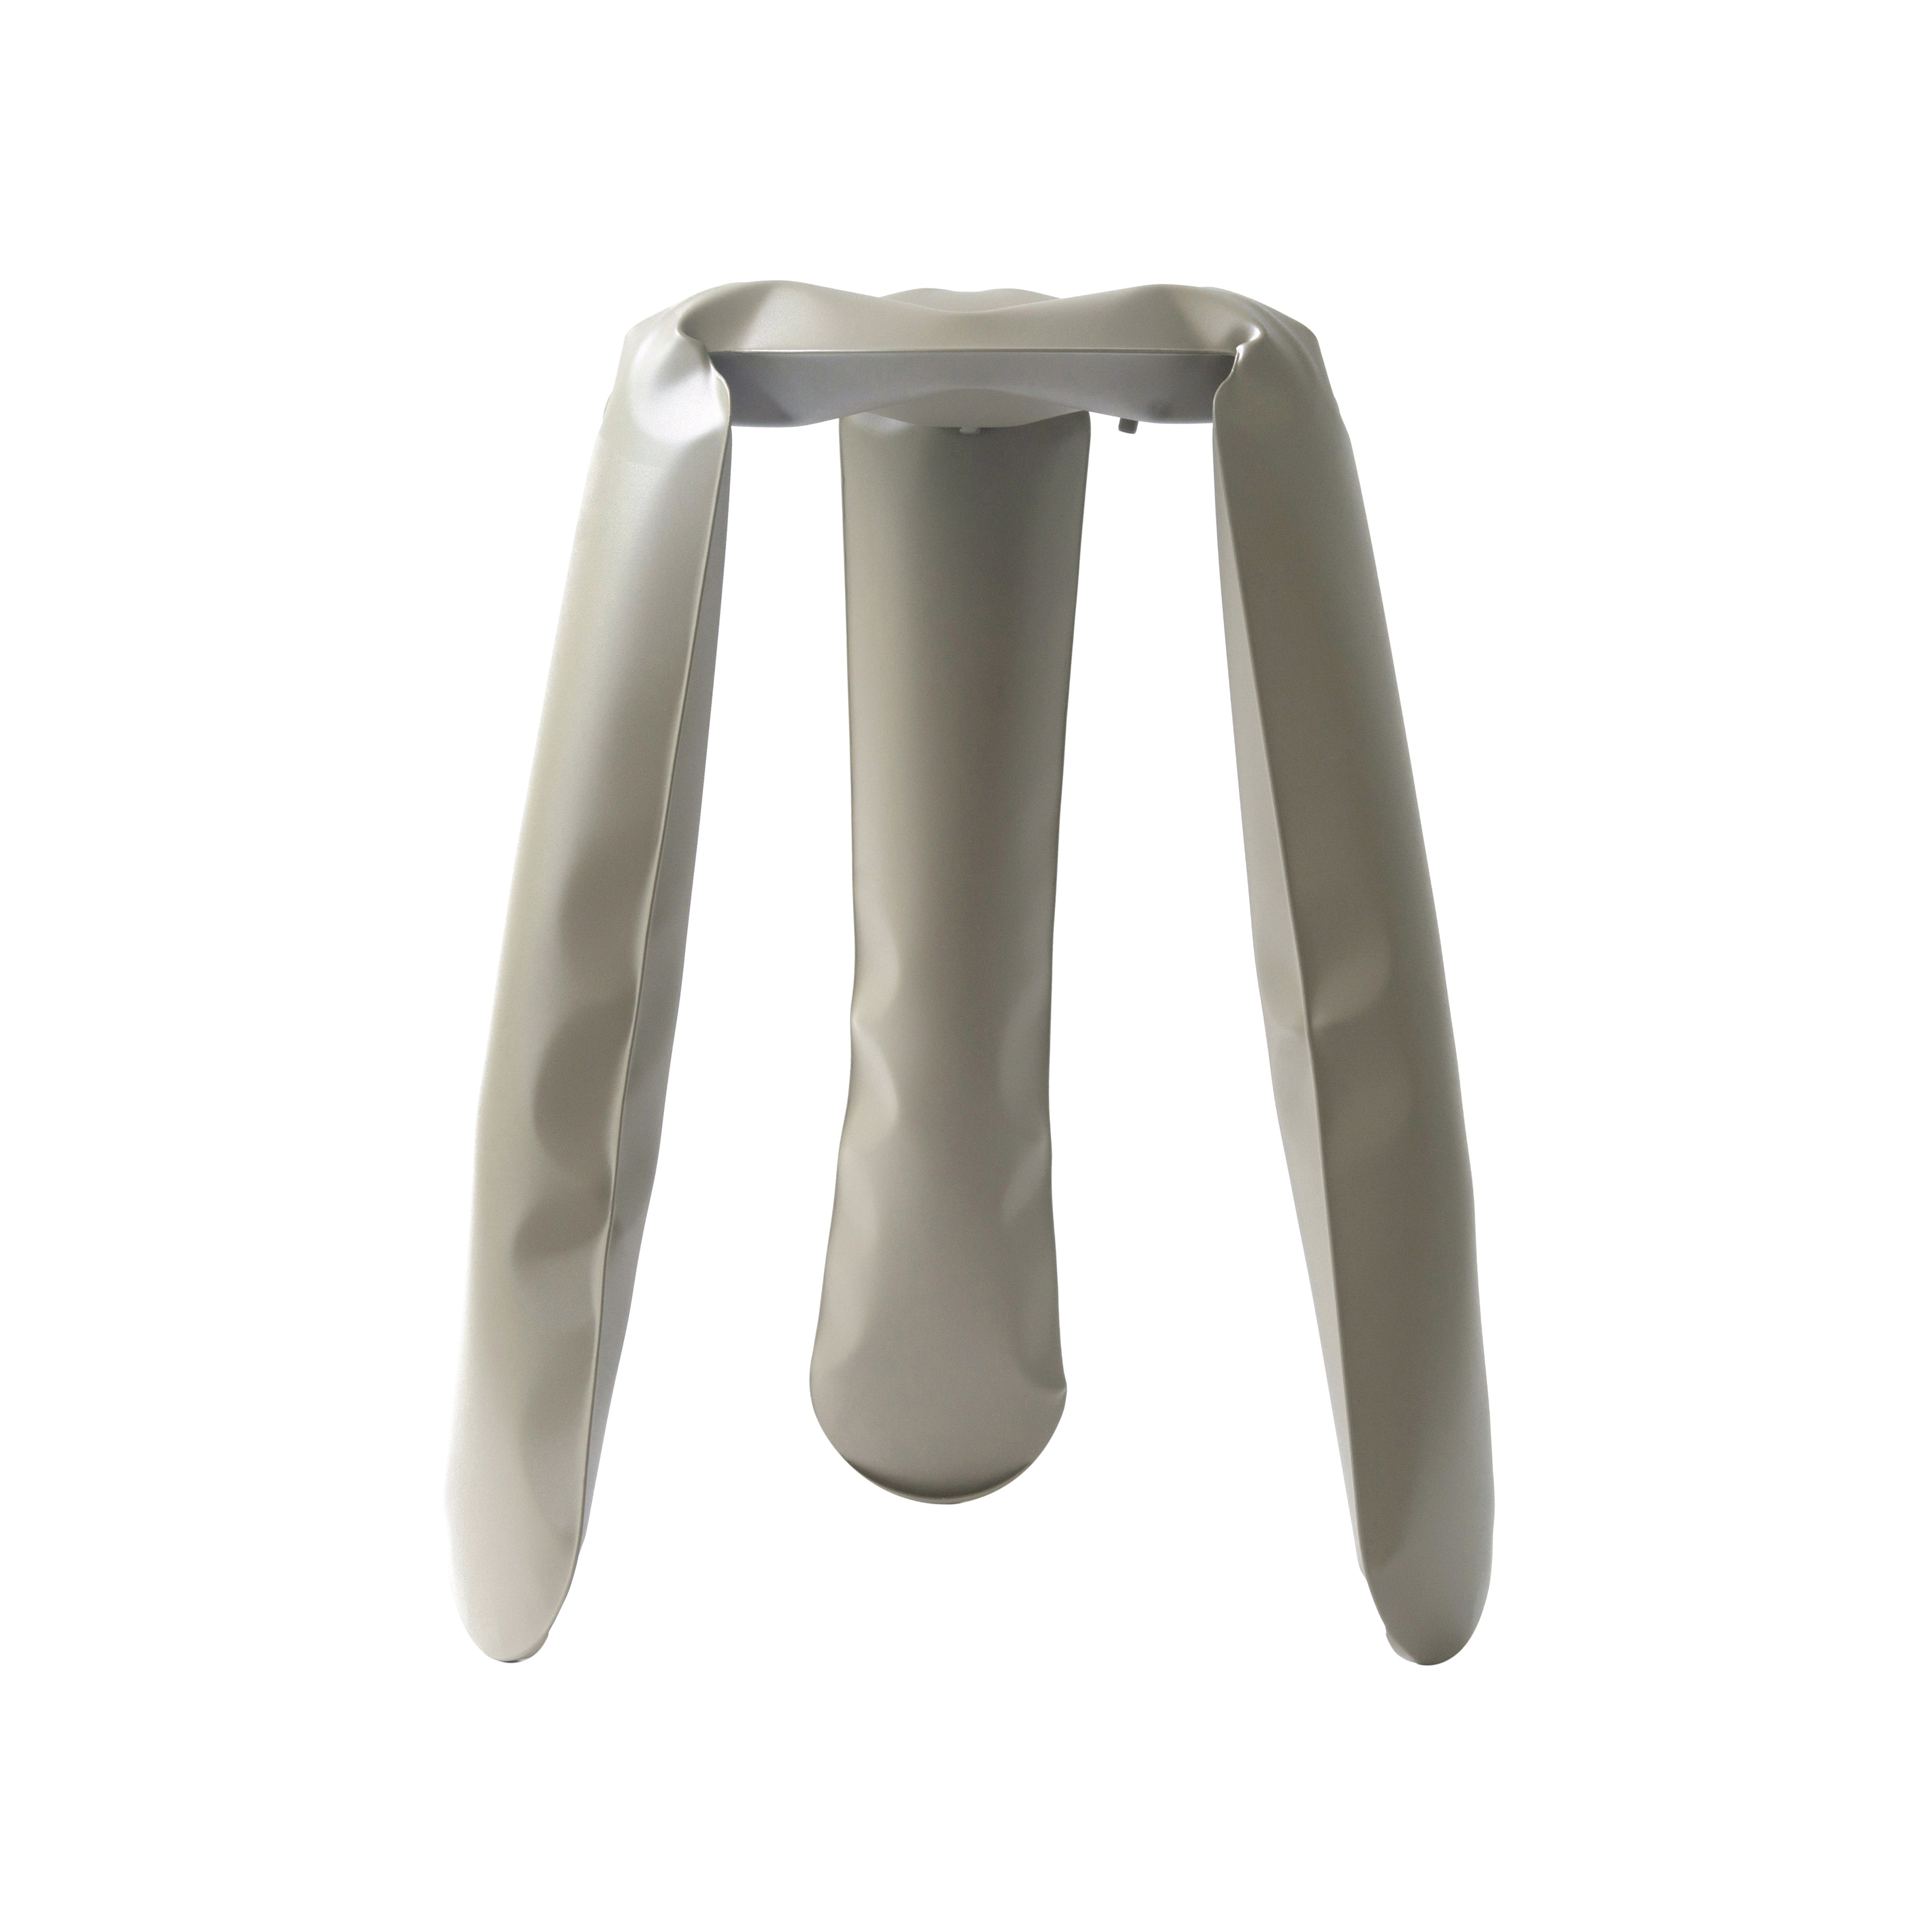 Plopp Kitchen Stool: Beige Grey + Carbon Steel